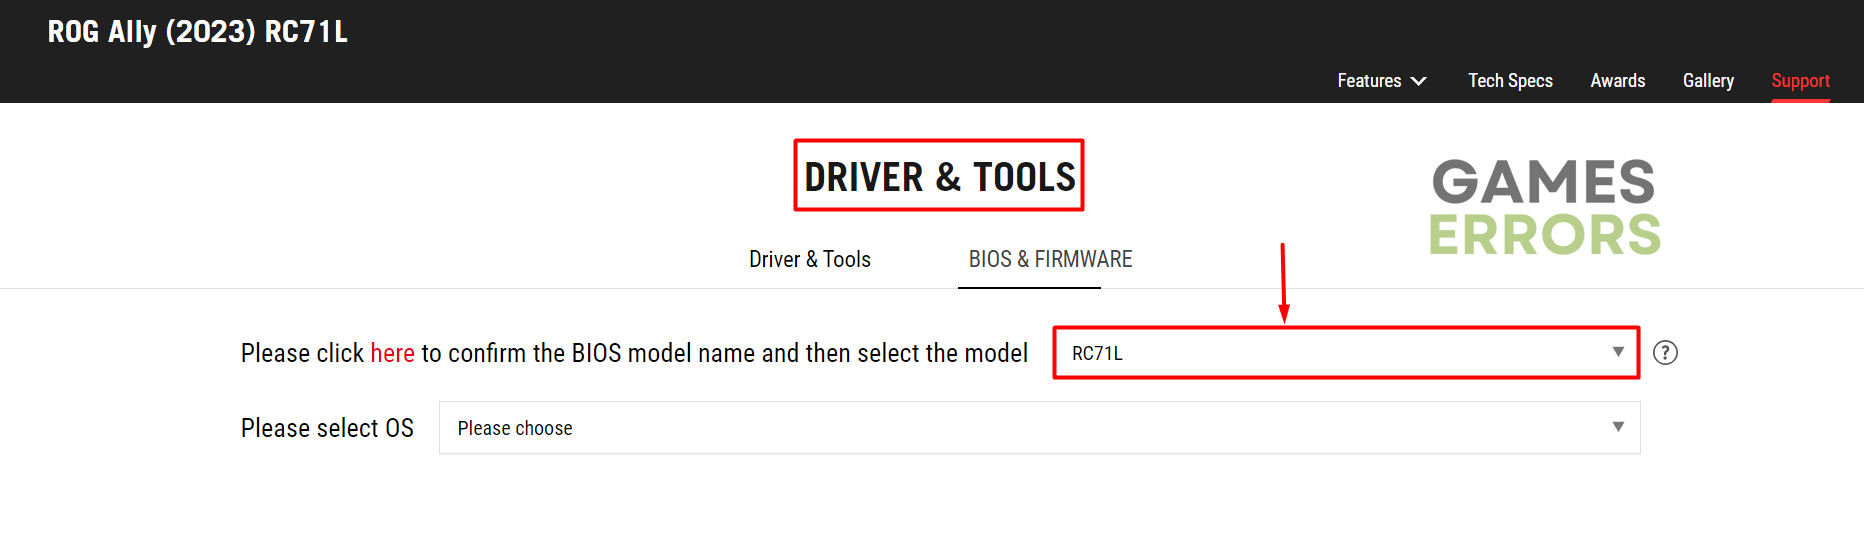 rog ally driver tools model